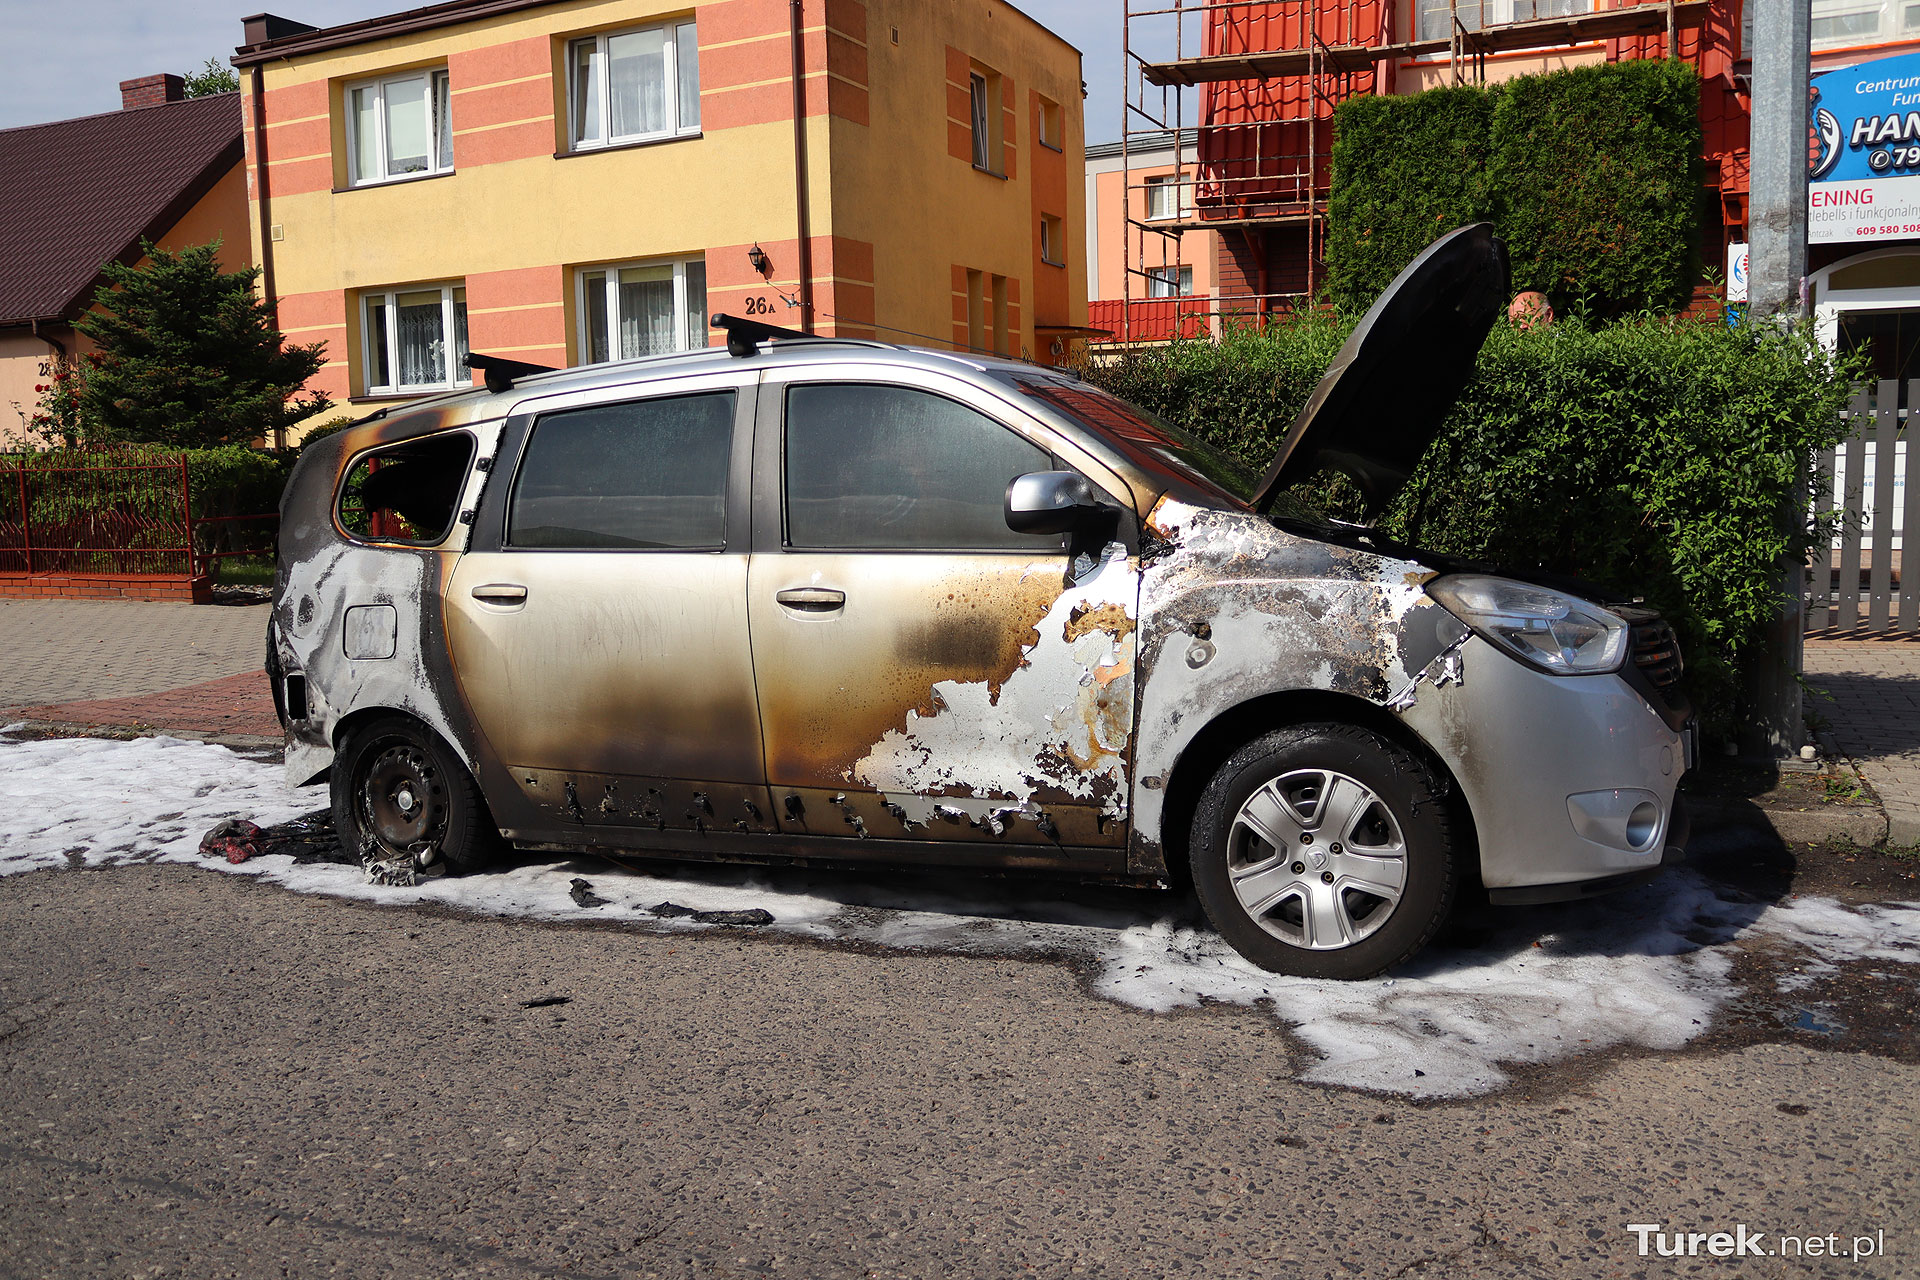 Czy to było celowe podpalenie? Spłonął samochód zaparkowany w centrum Turku